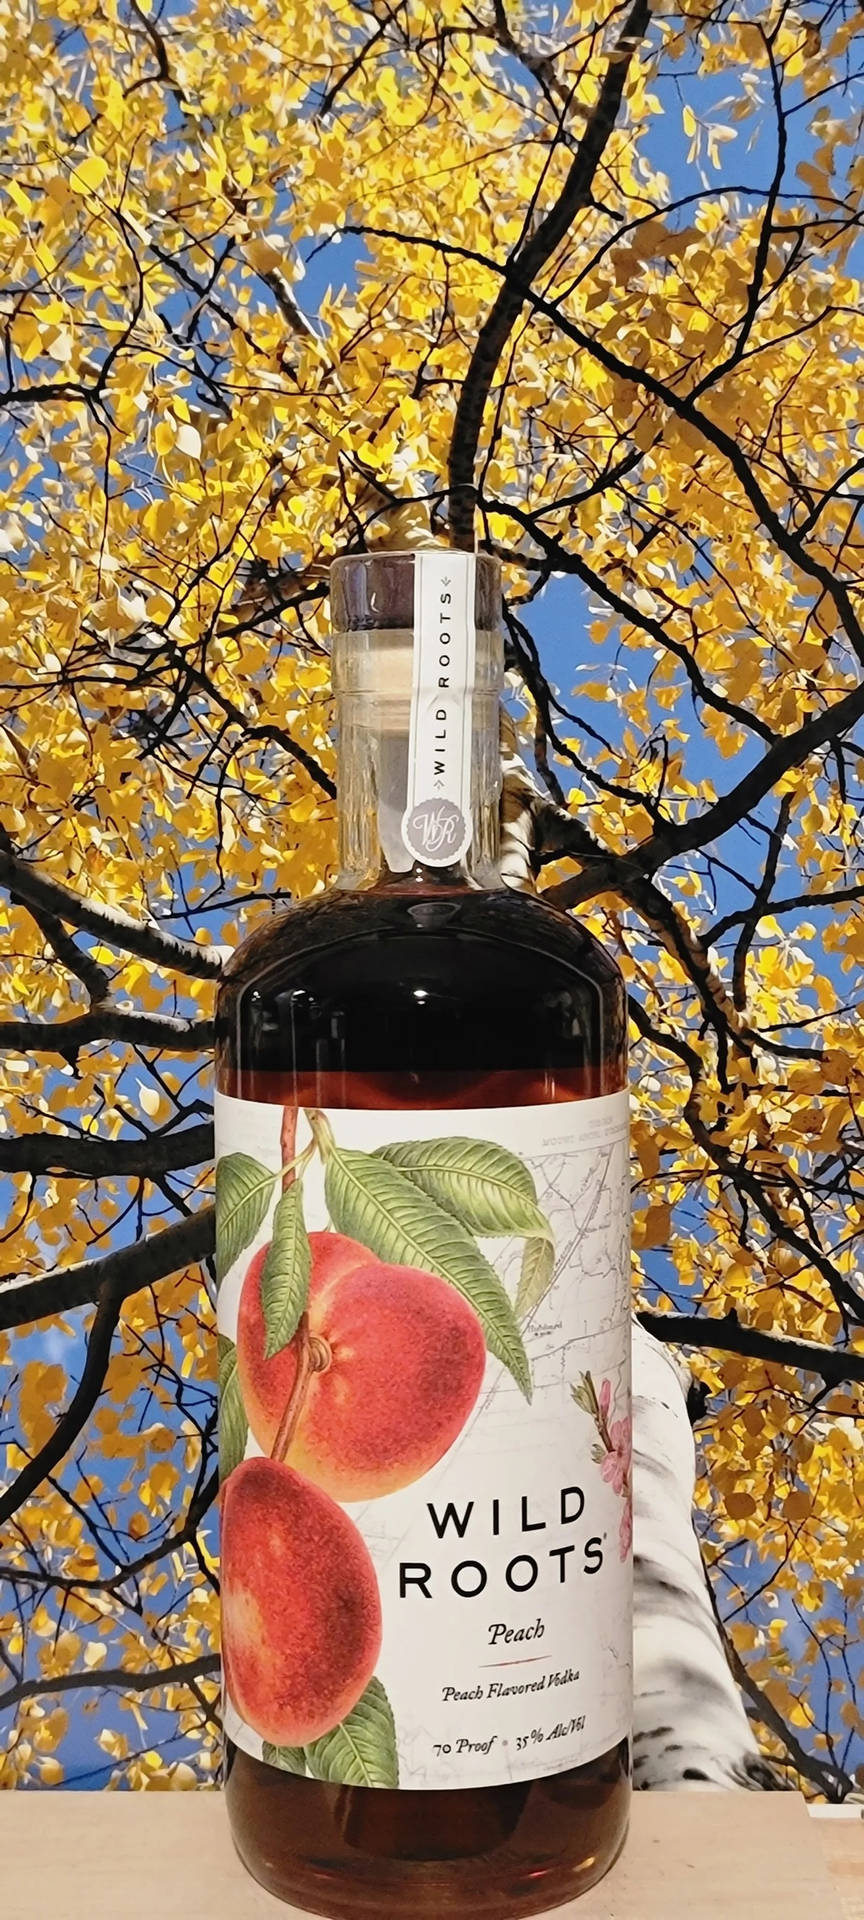 Wild Roots Peach Flavored Vodka Bottle Wallpaper